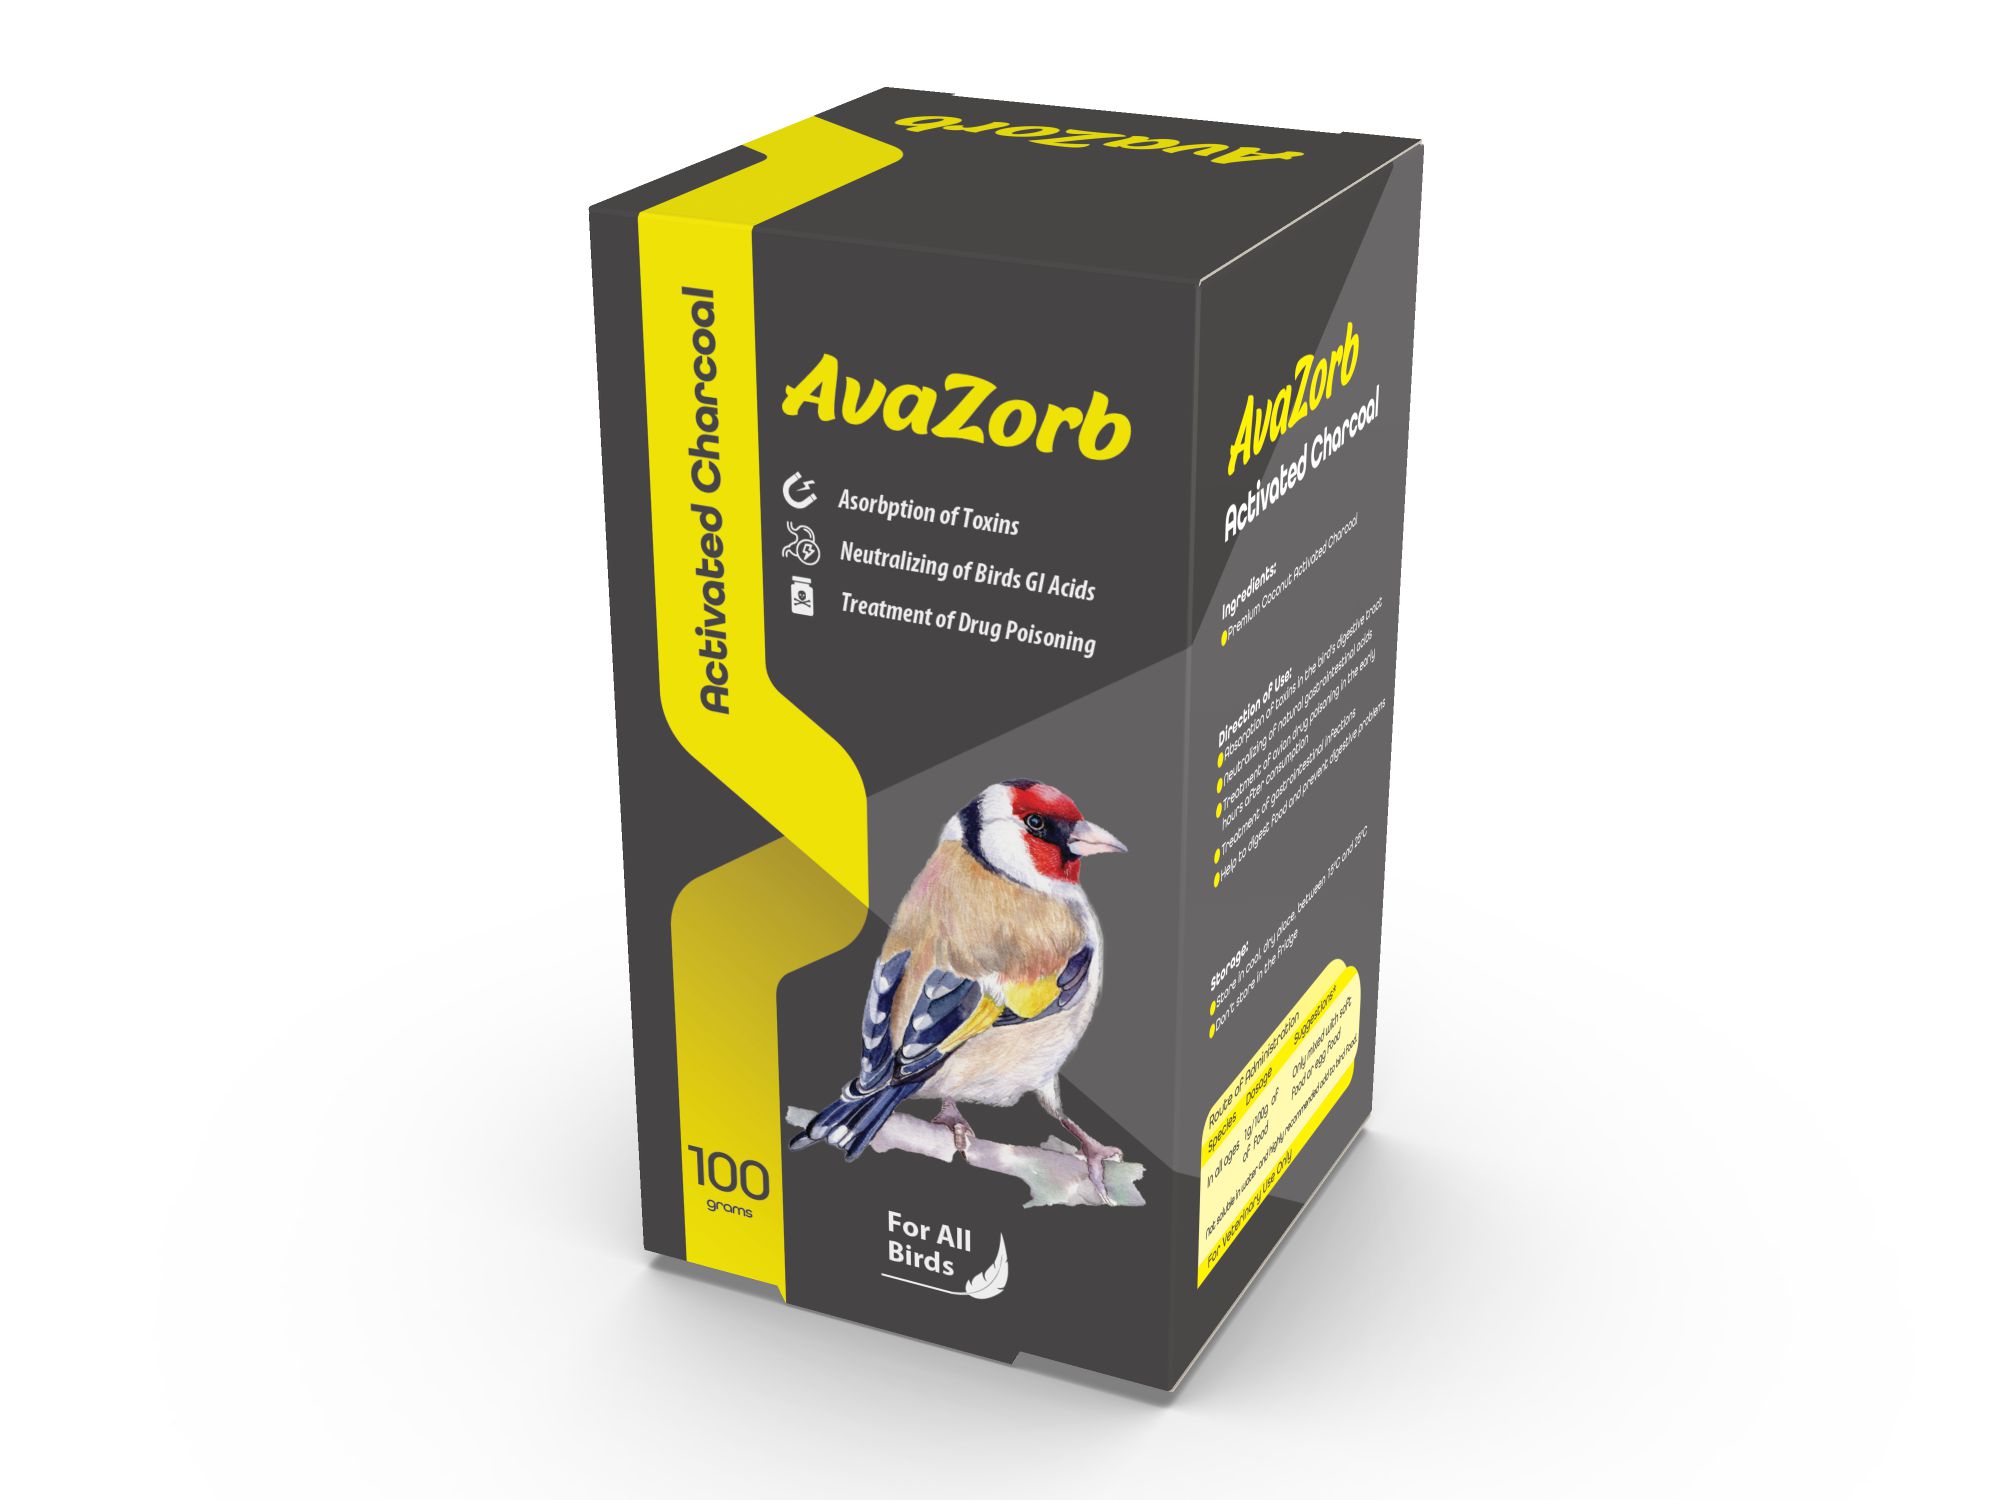 AvaZorb Bird Probiotic Packaging